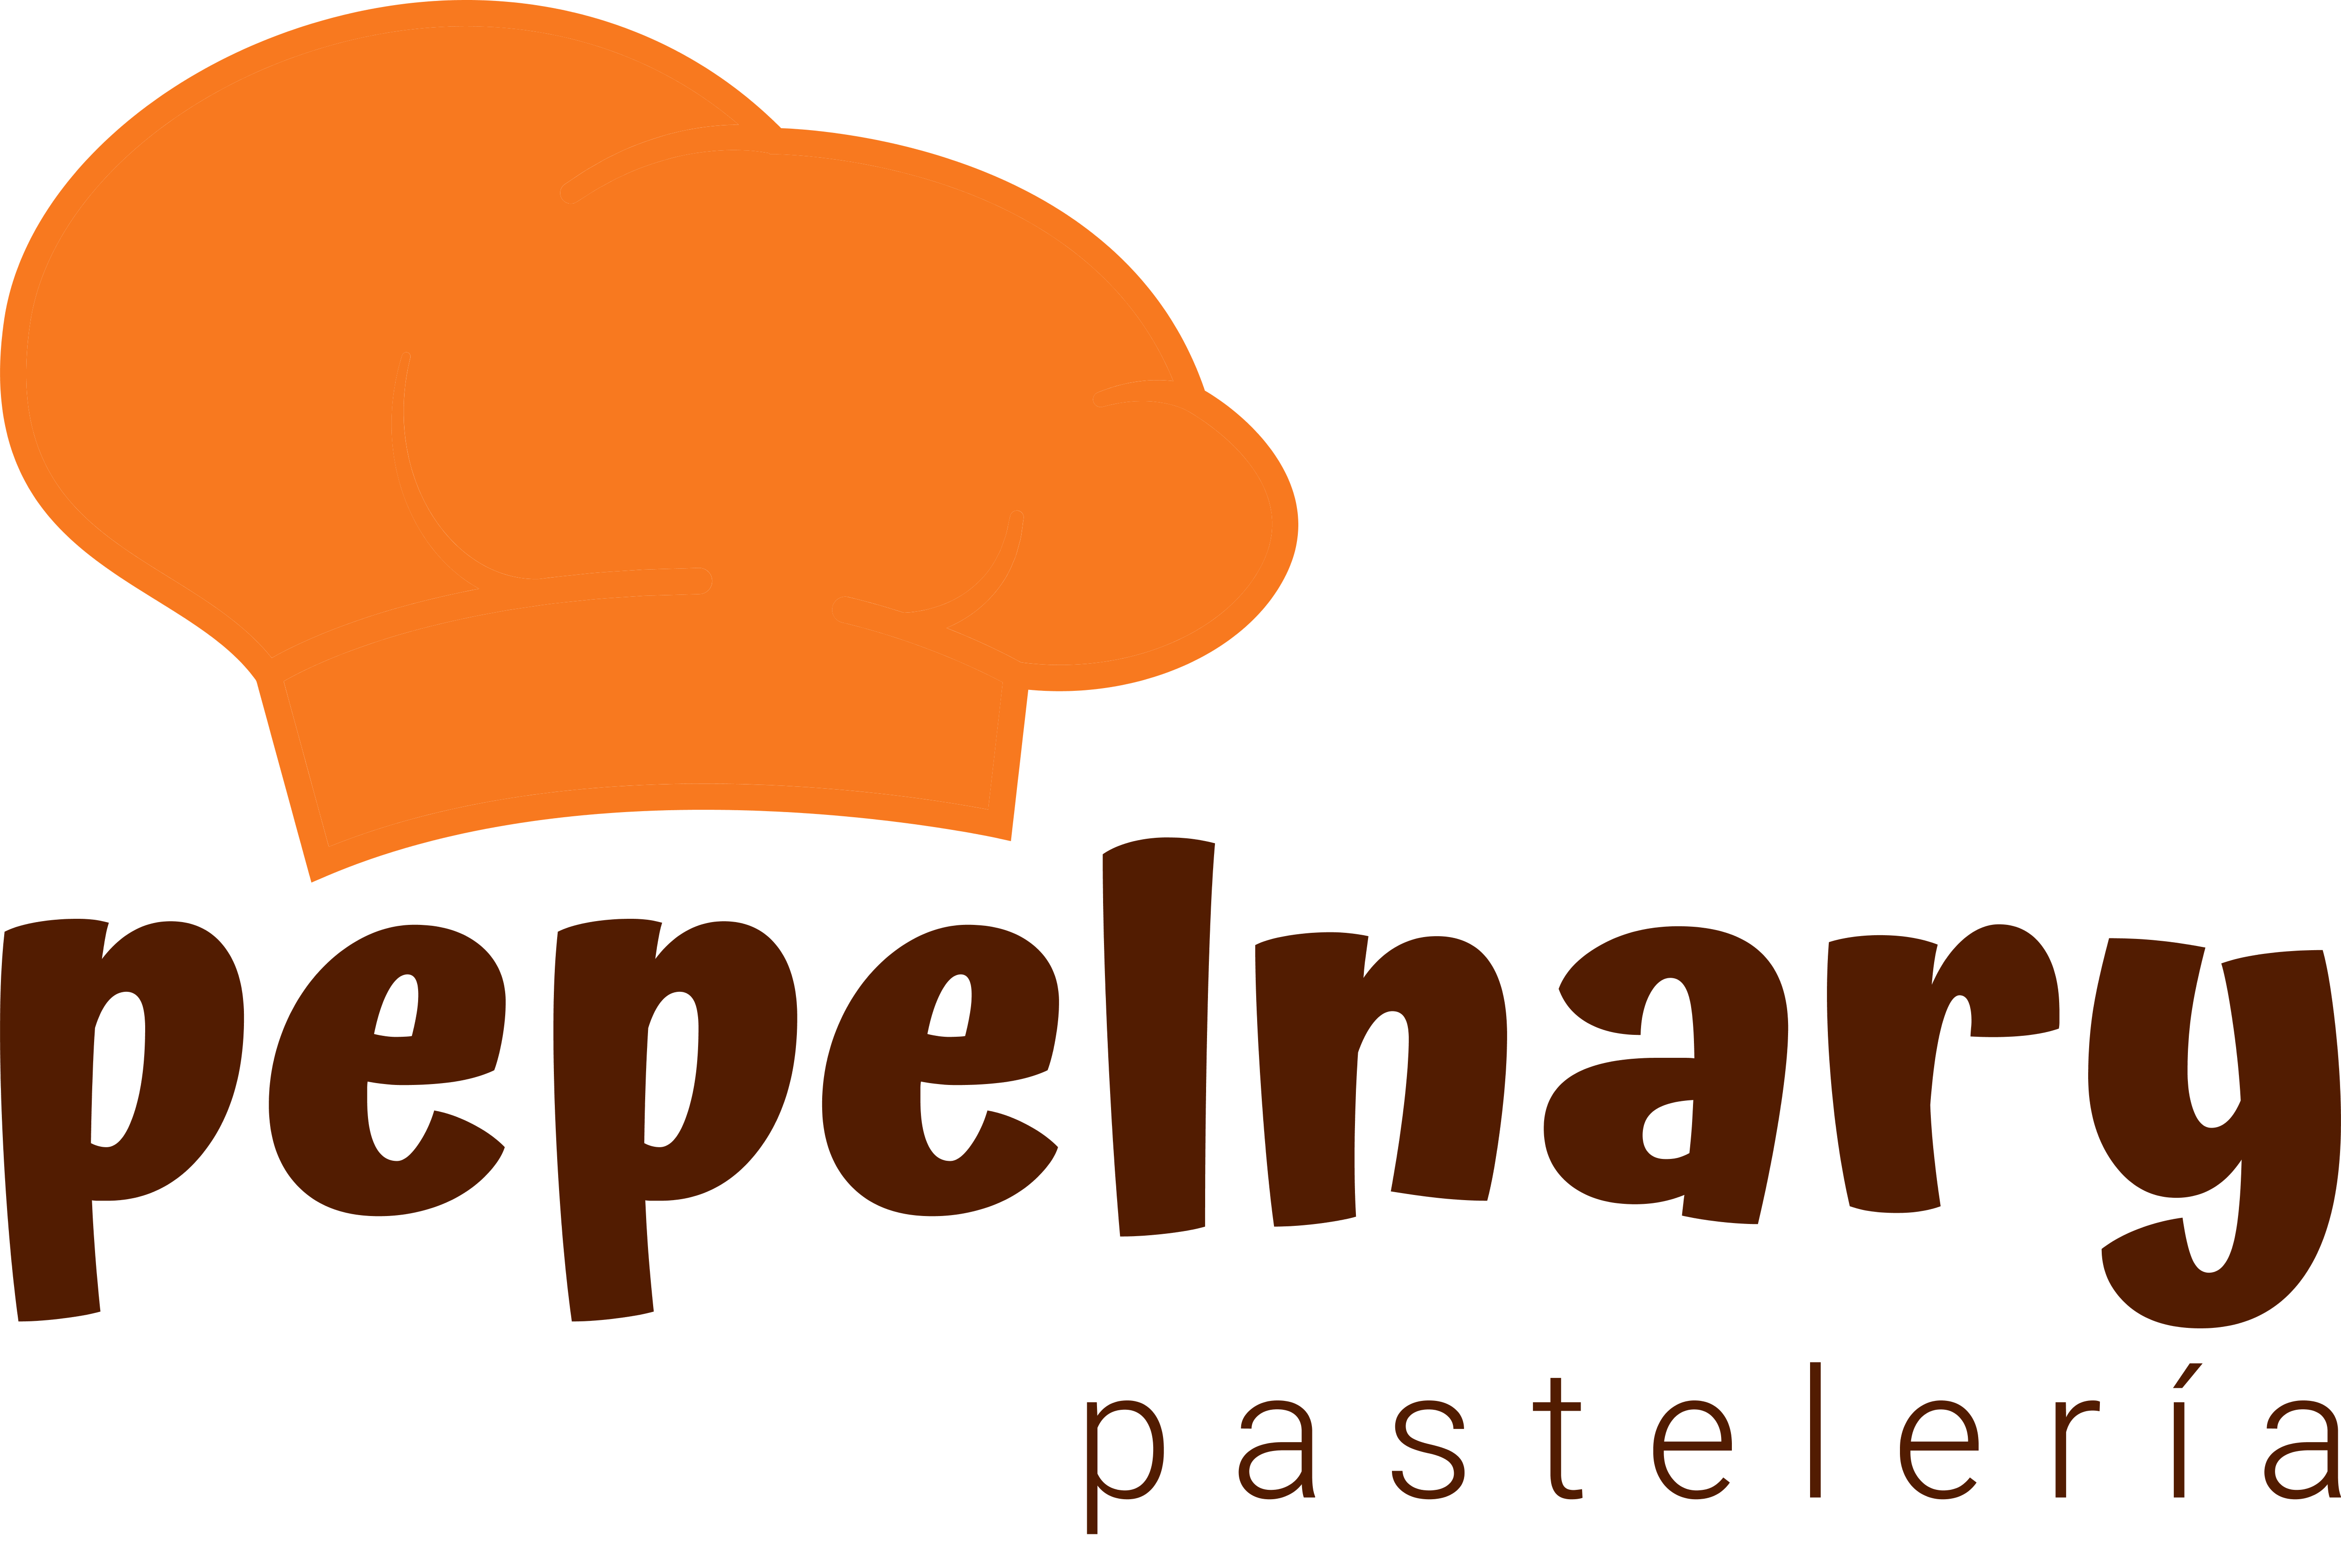 (c) Pepelnary.com